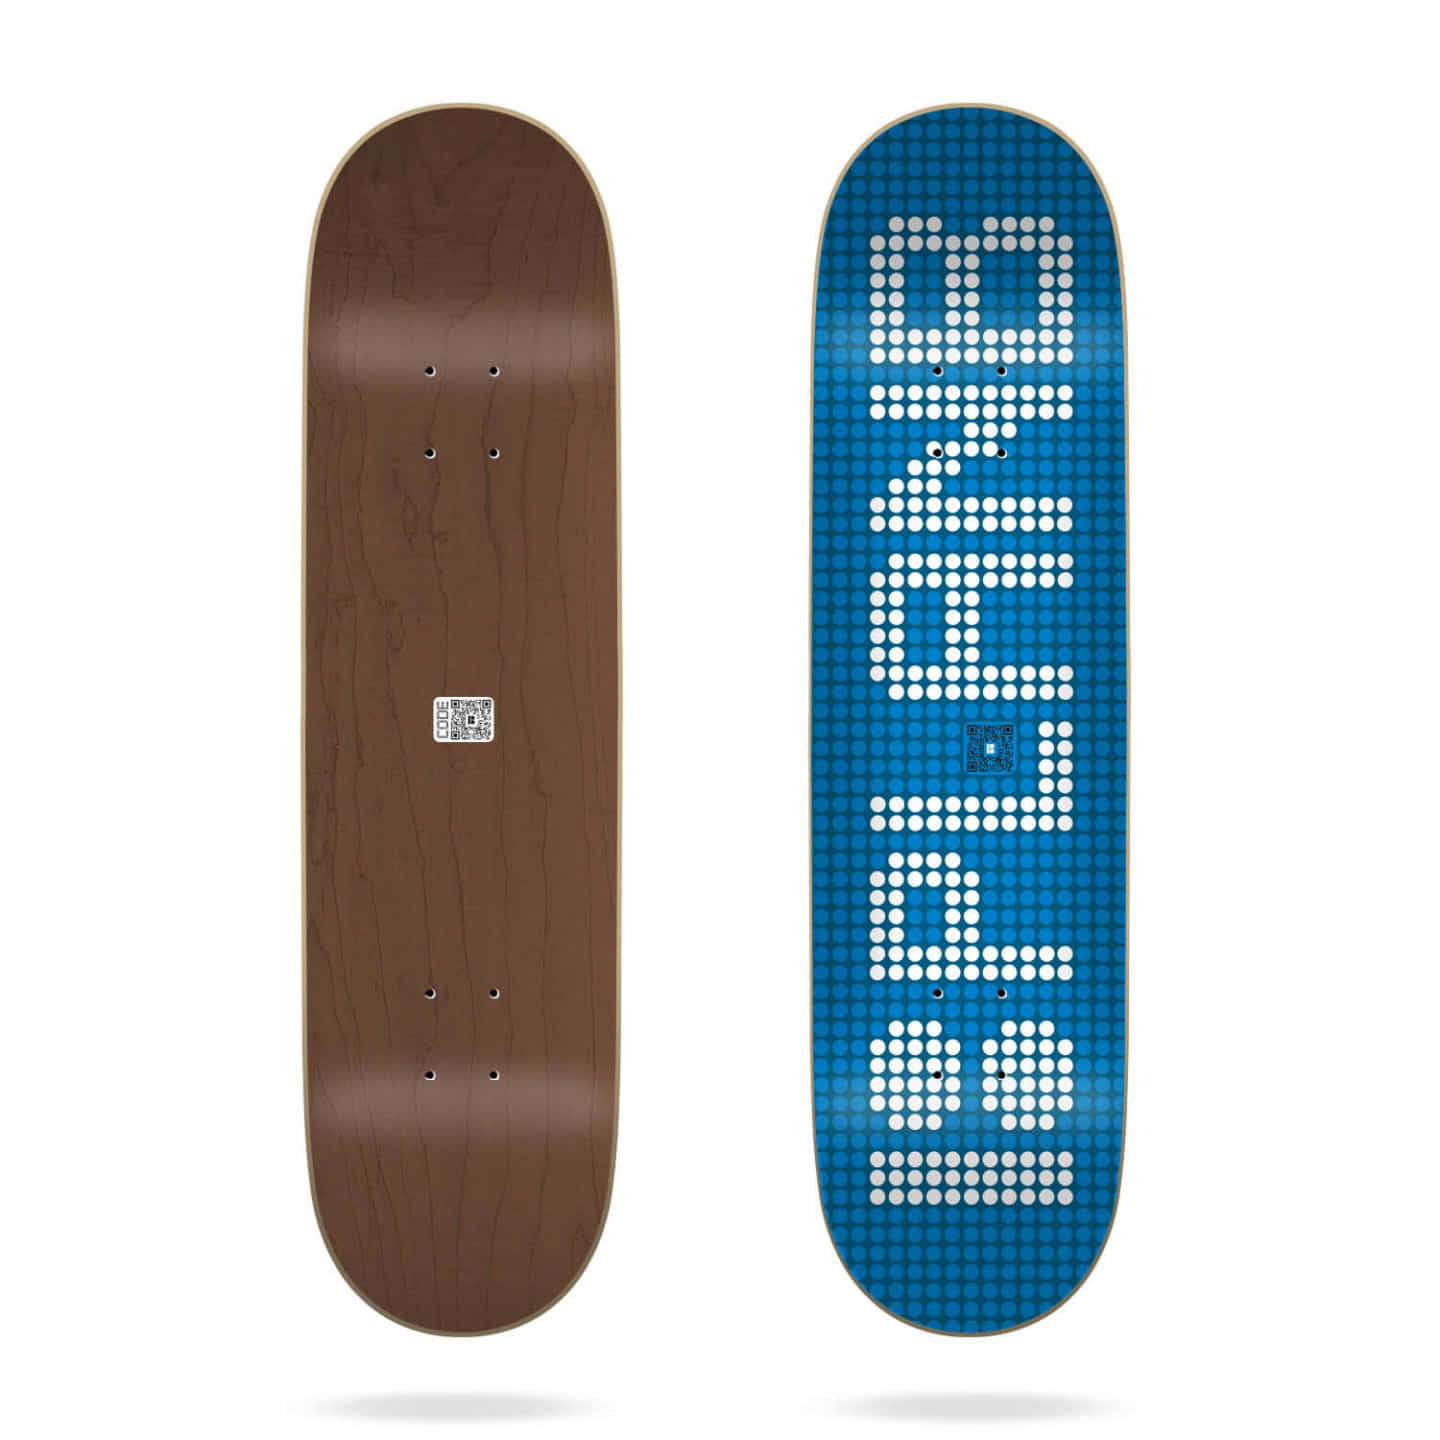 En skateboard med ordet 'plane' på det. Wallpaper